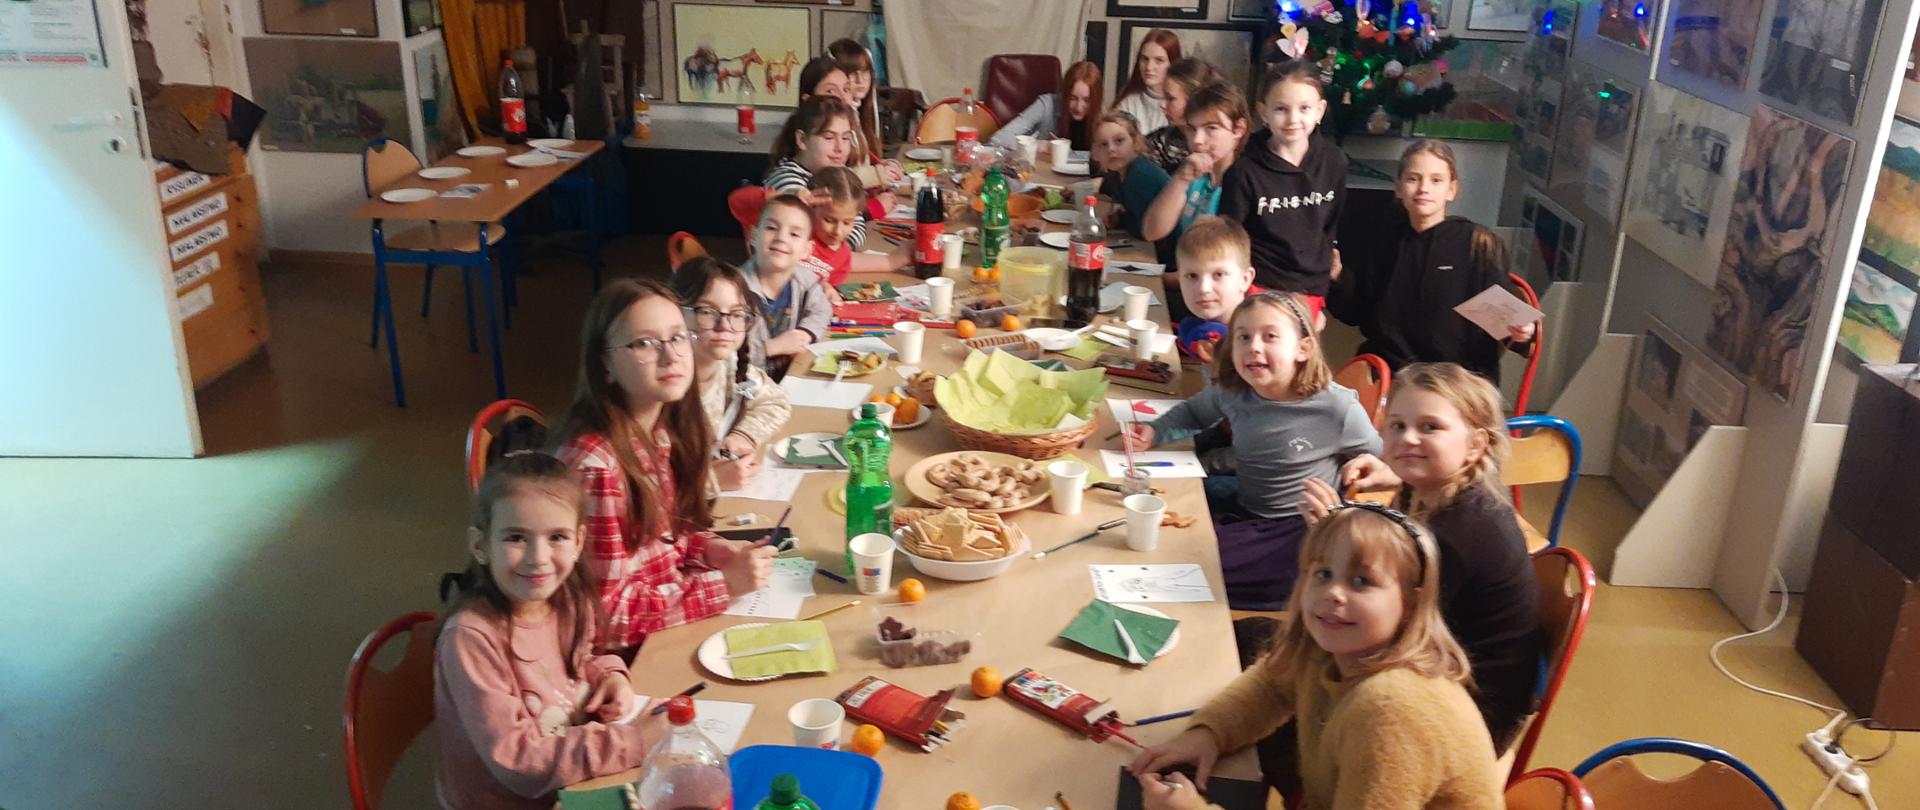 Na zdjęciu dzieci z Polski i Ukrainy siedzą przy wspólnym stole, w sali zajęć z rysunku i malarstwa, w tle stoi choinka ozdobiona pracami dzieci.